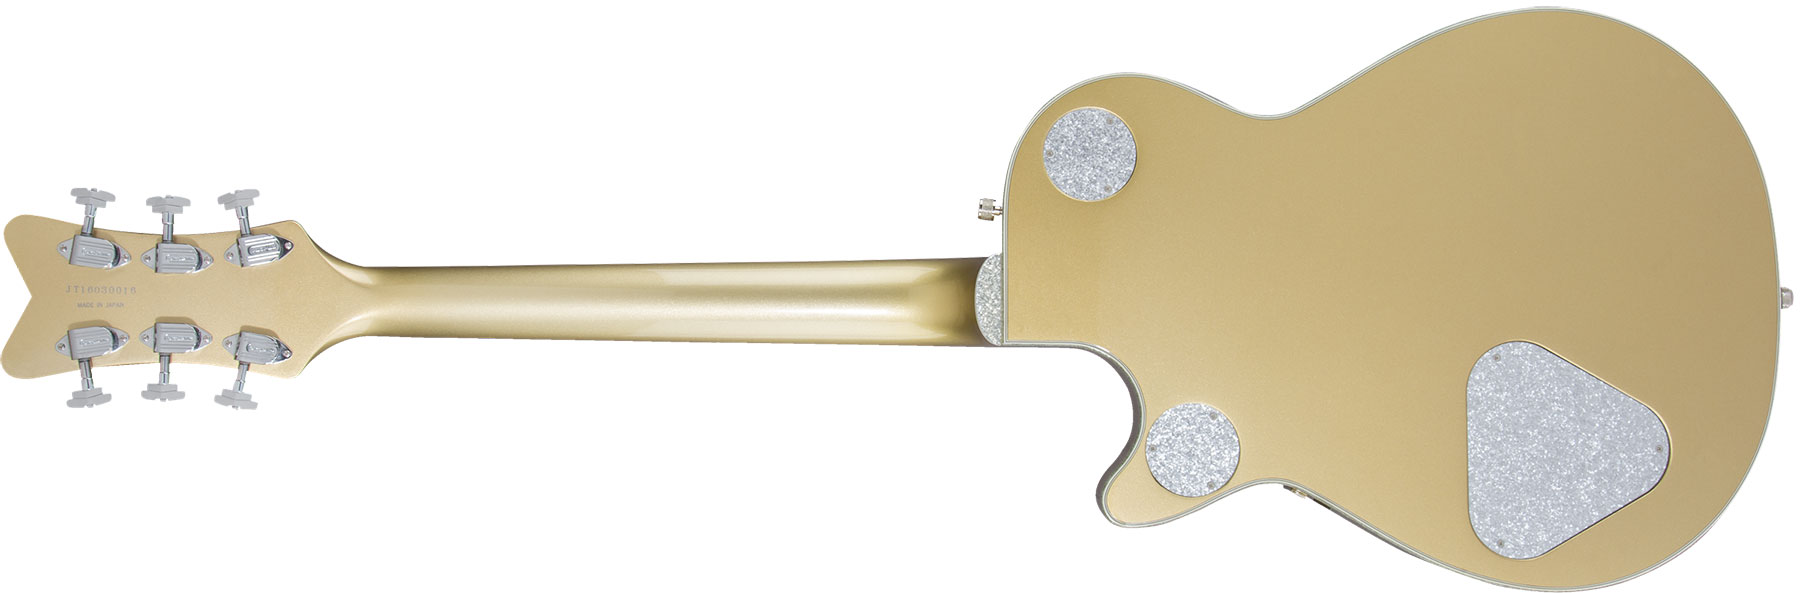 Gretsch G6134t Penguin Ltd Professional Japon Hh Trem Bigsby Eb - Casino Gold - Guitare Électrique Single Cut - Variation 1